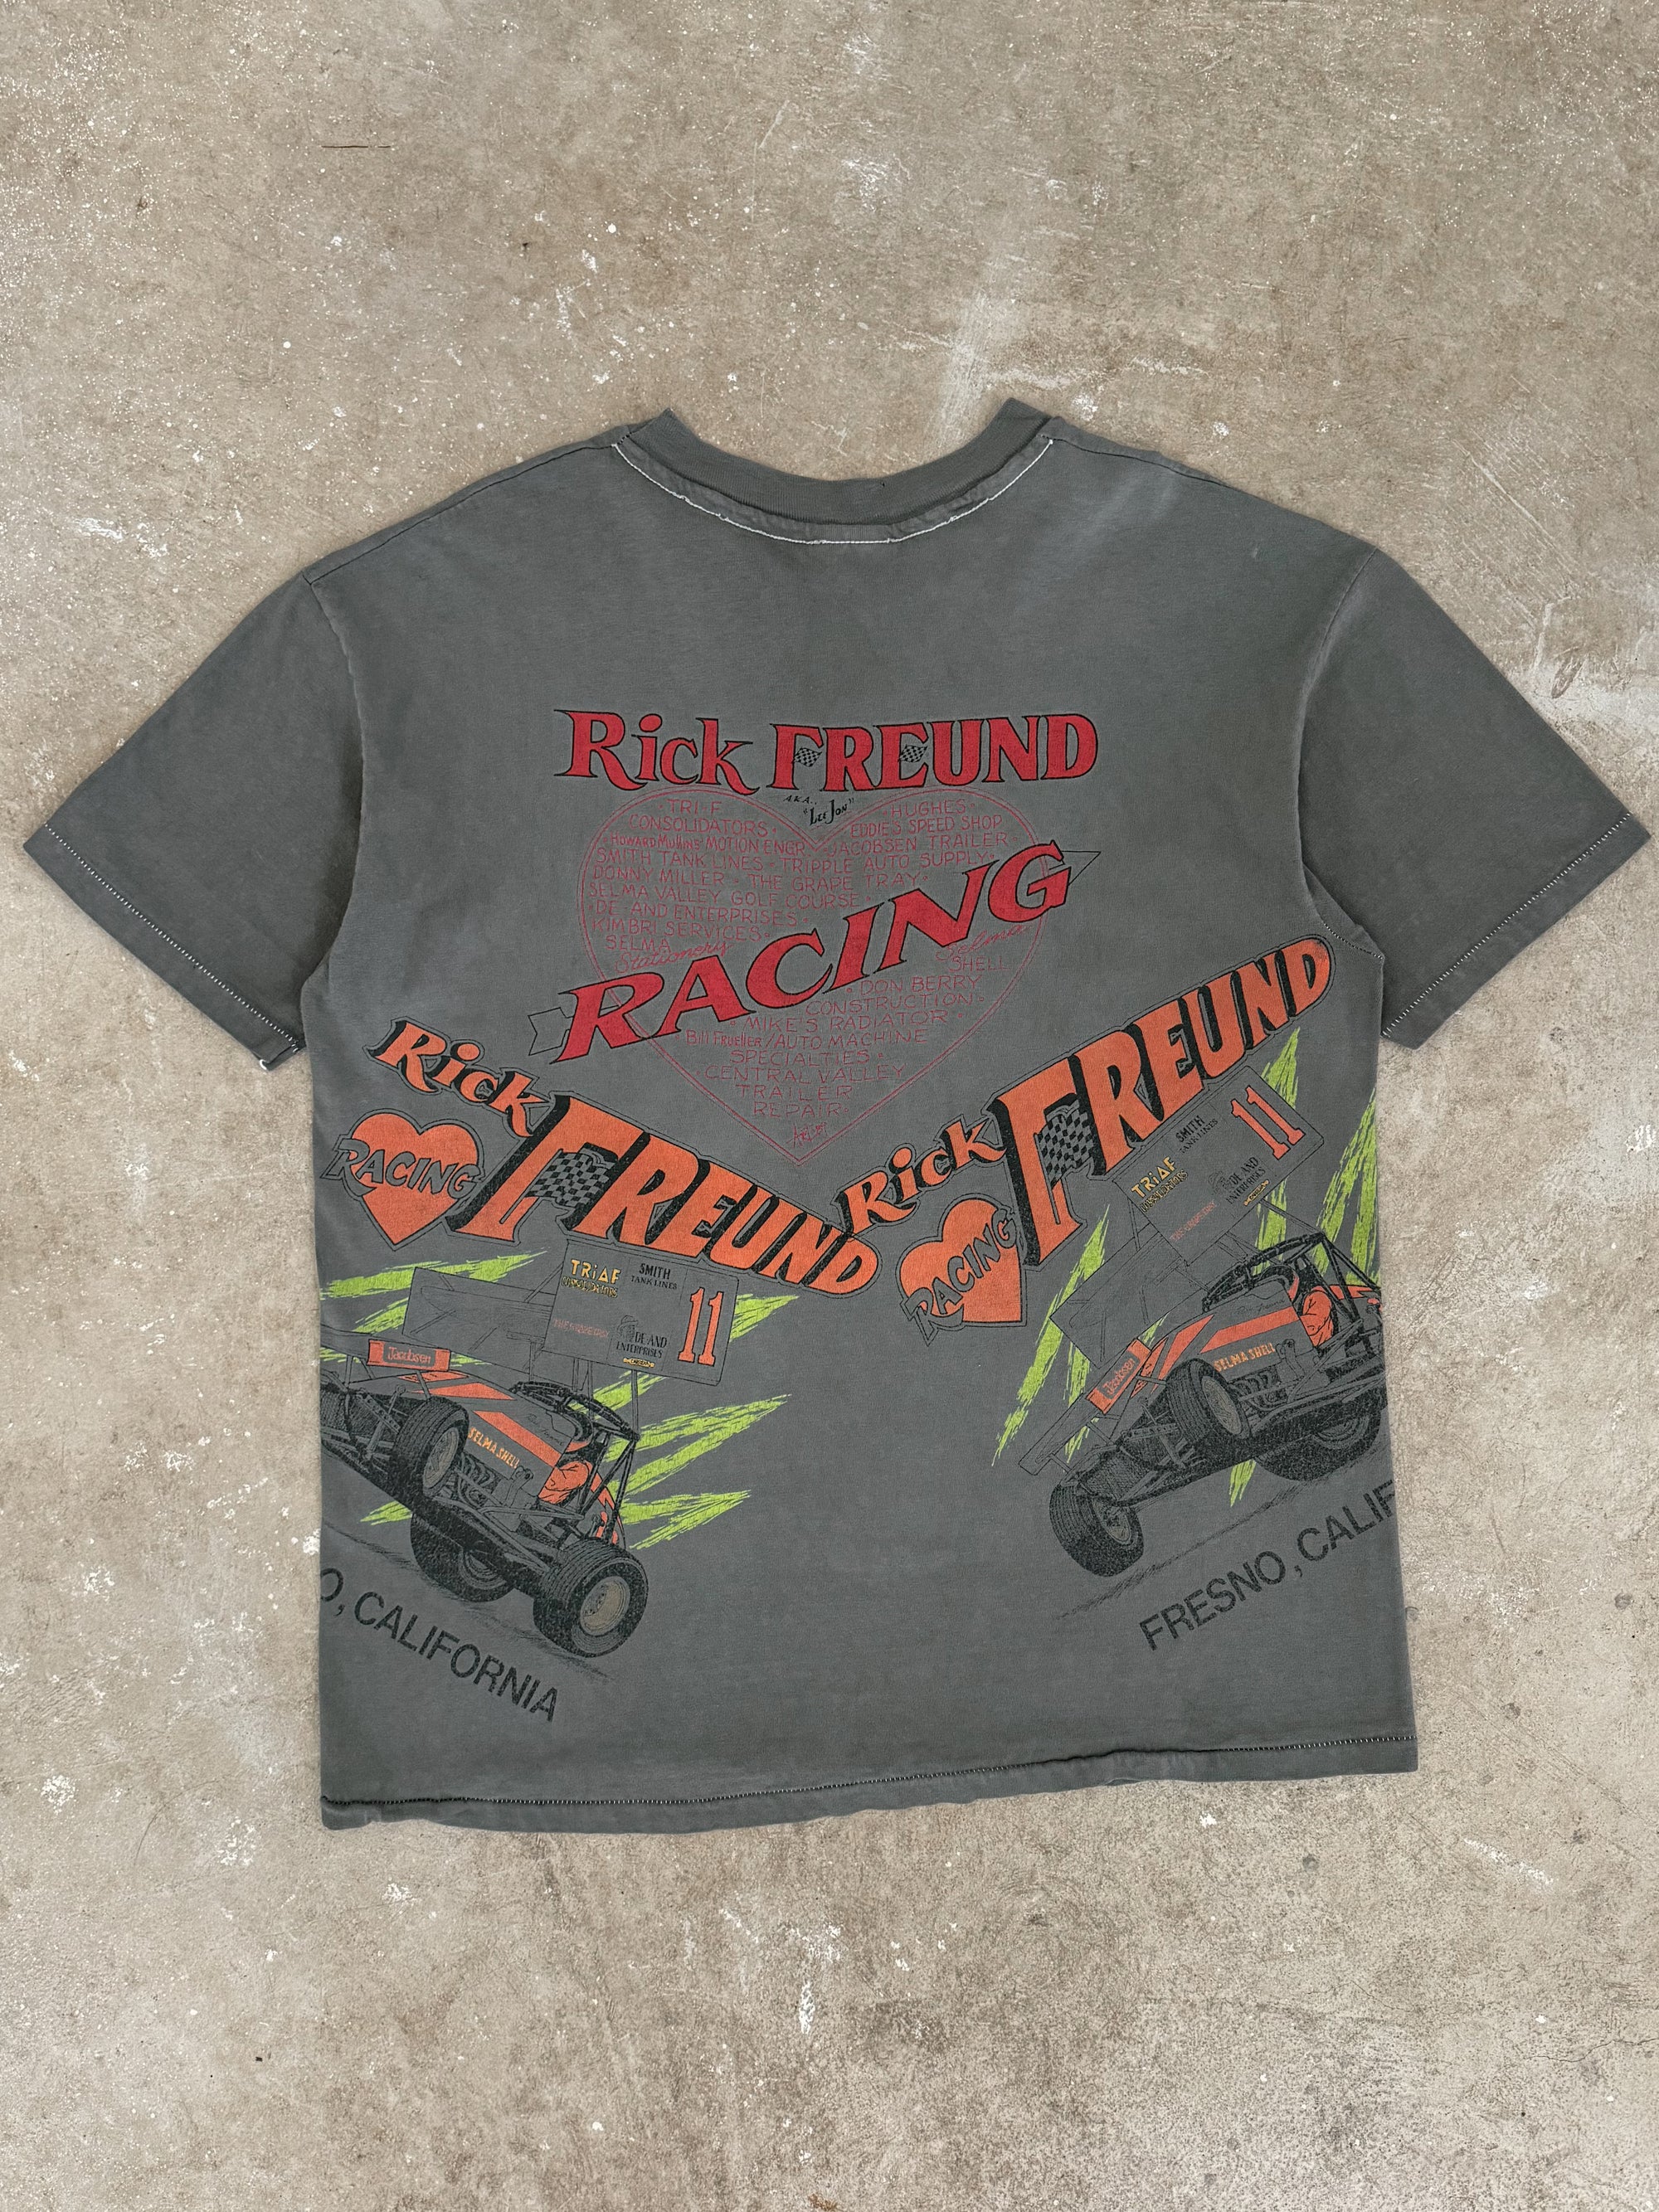 1980s/90s "Rick Freund Racing" Tee (L)